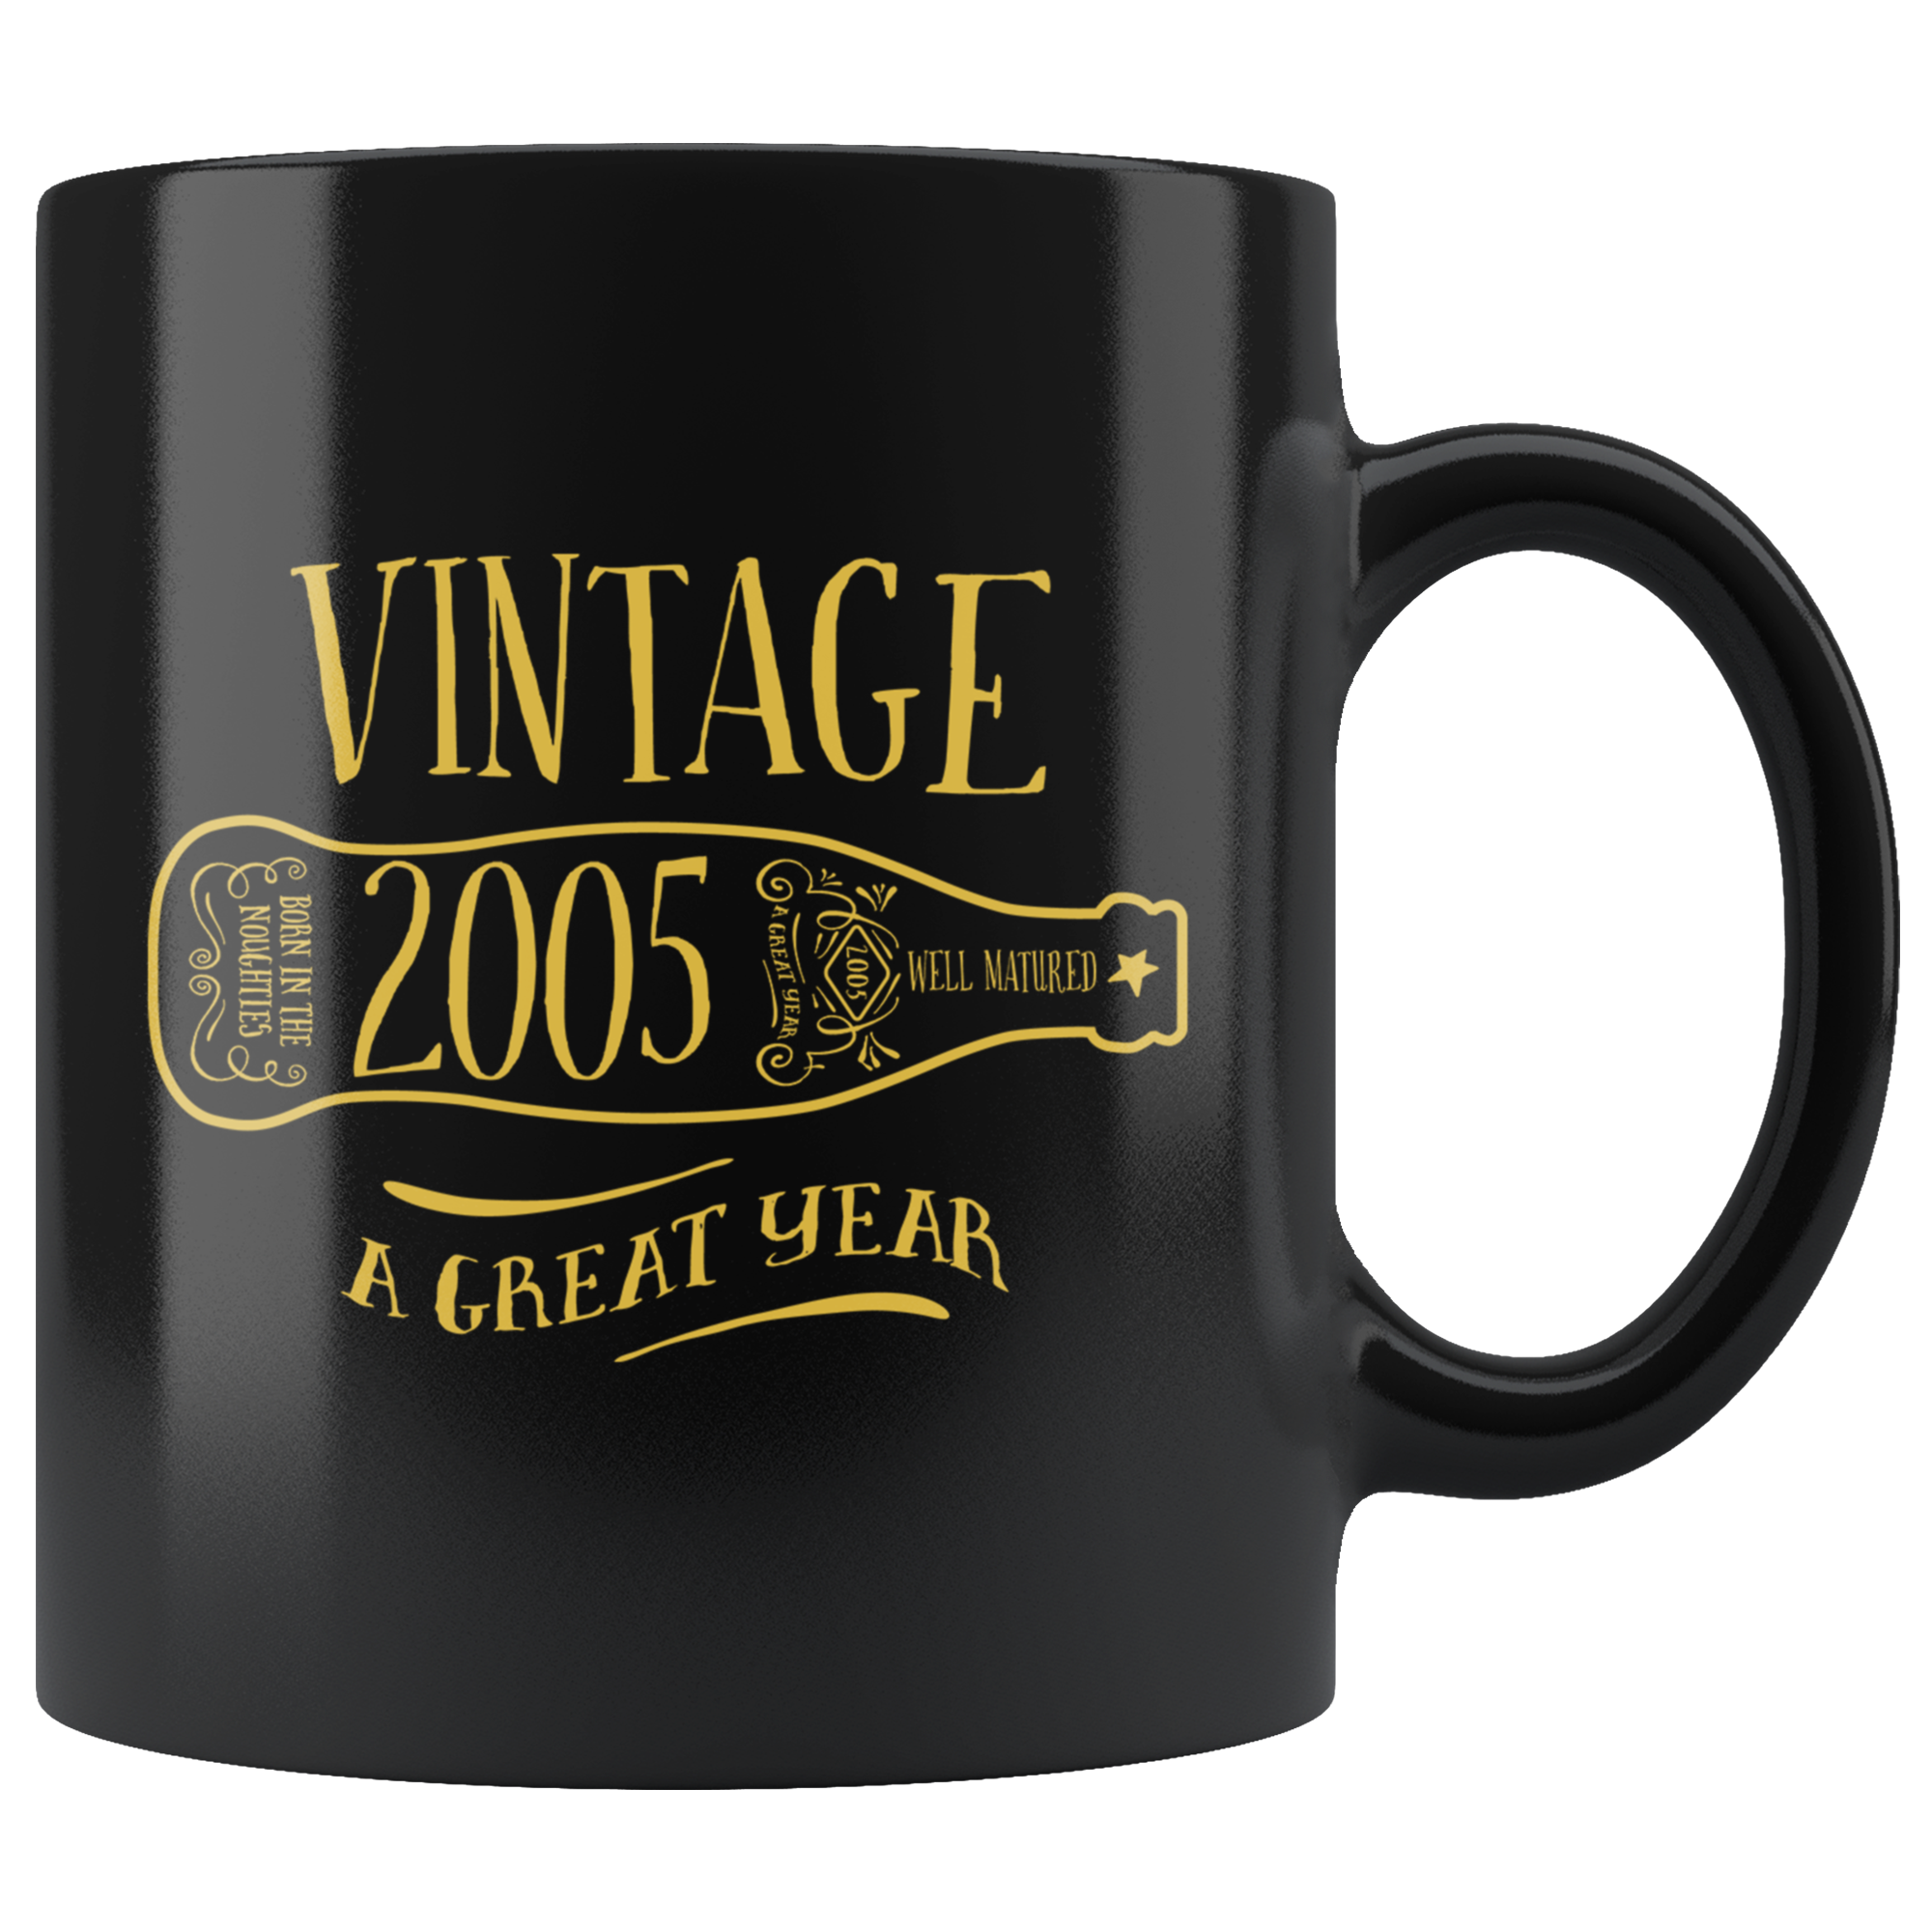 Vintage 2005 - Black Mug